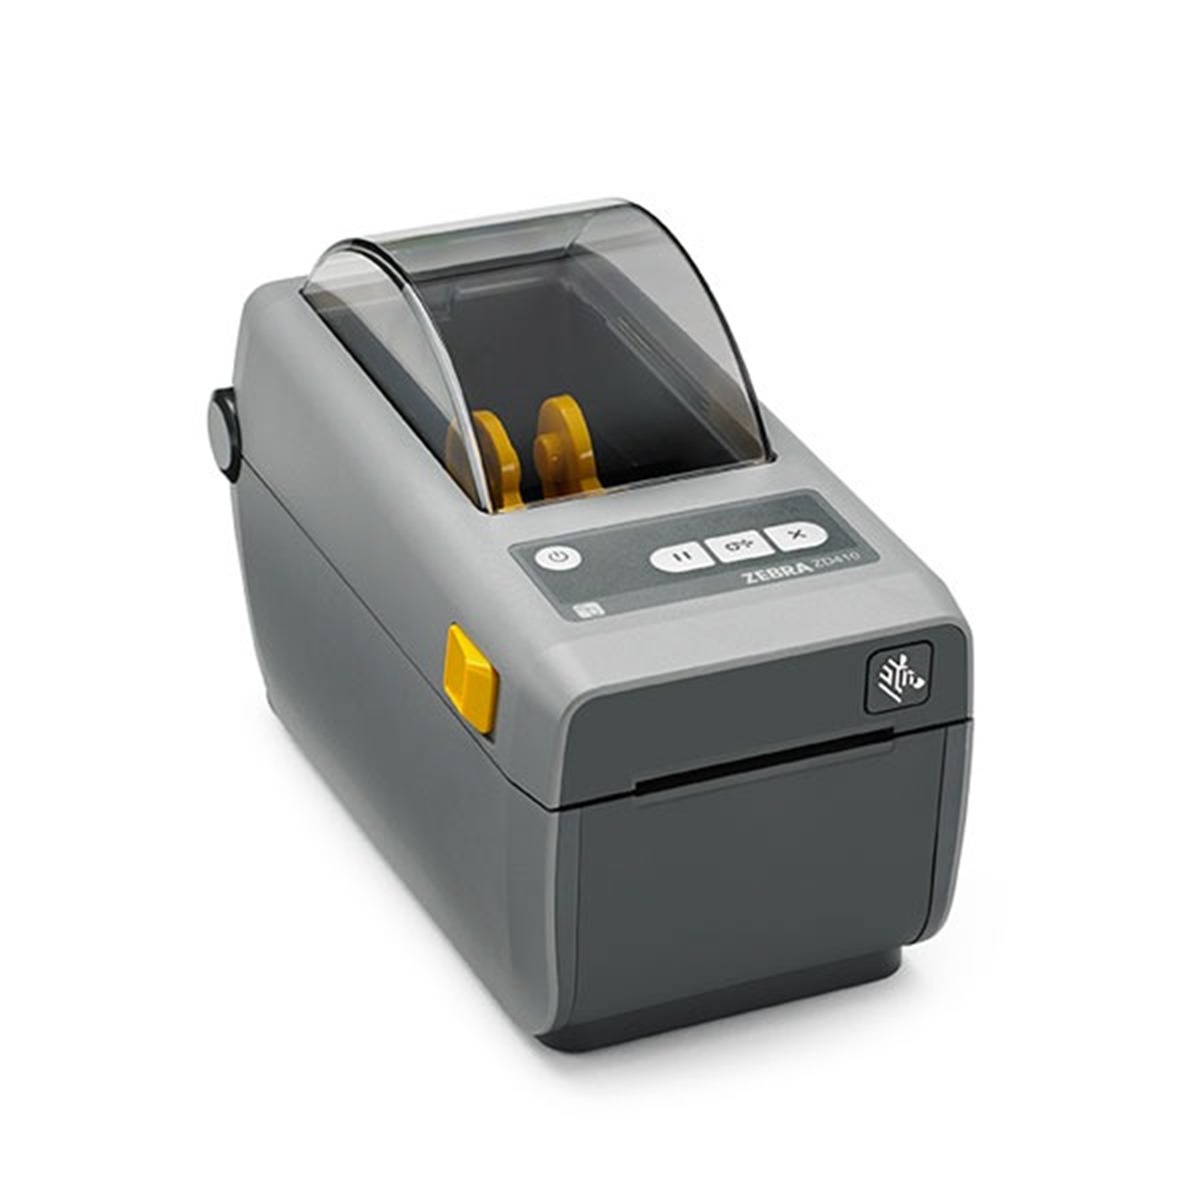 Zd410-desktop-printer-image-1-1-600px  Thumbnail0